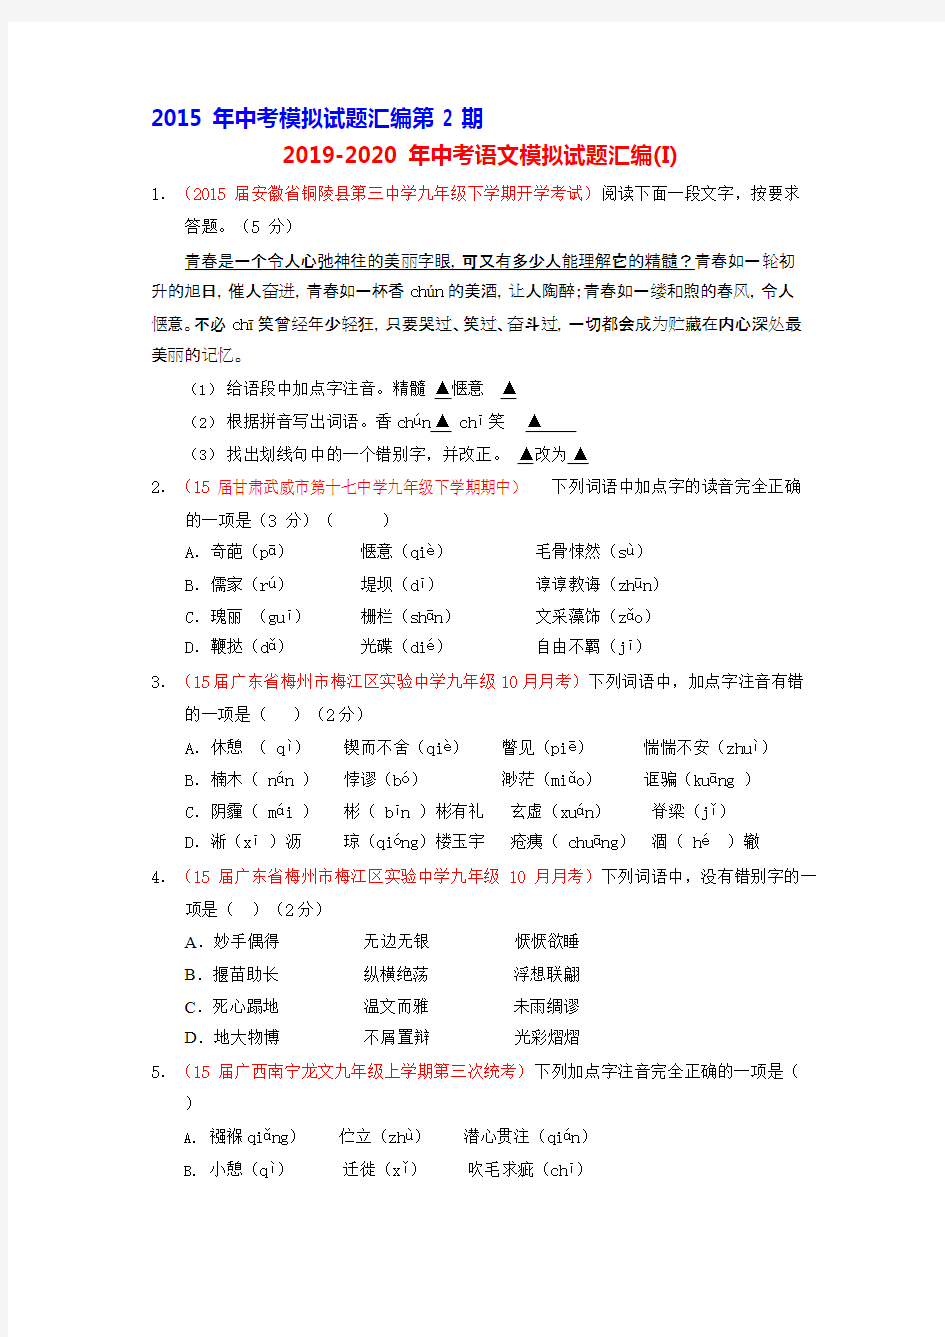 2019-2020年中考语文模拟试题汇编(I),推荐文档